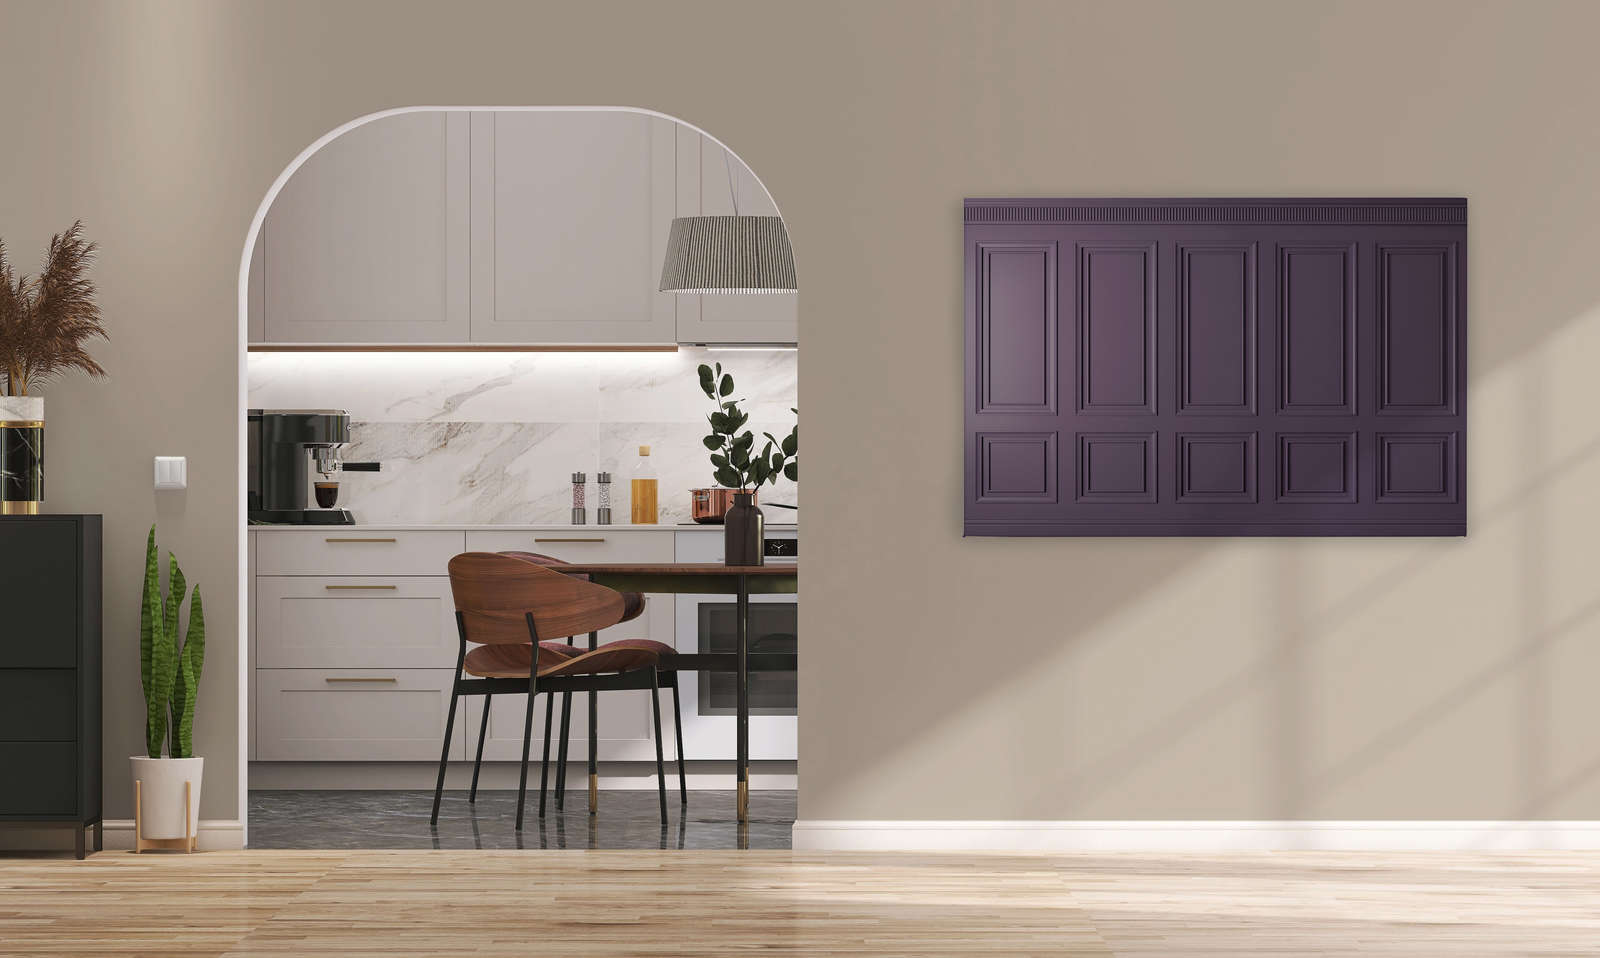             Kensington 3 - 3D toile lambris bois violet foncé, violet - 1,20 m x 0,80 m
        